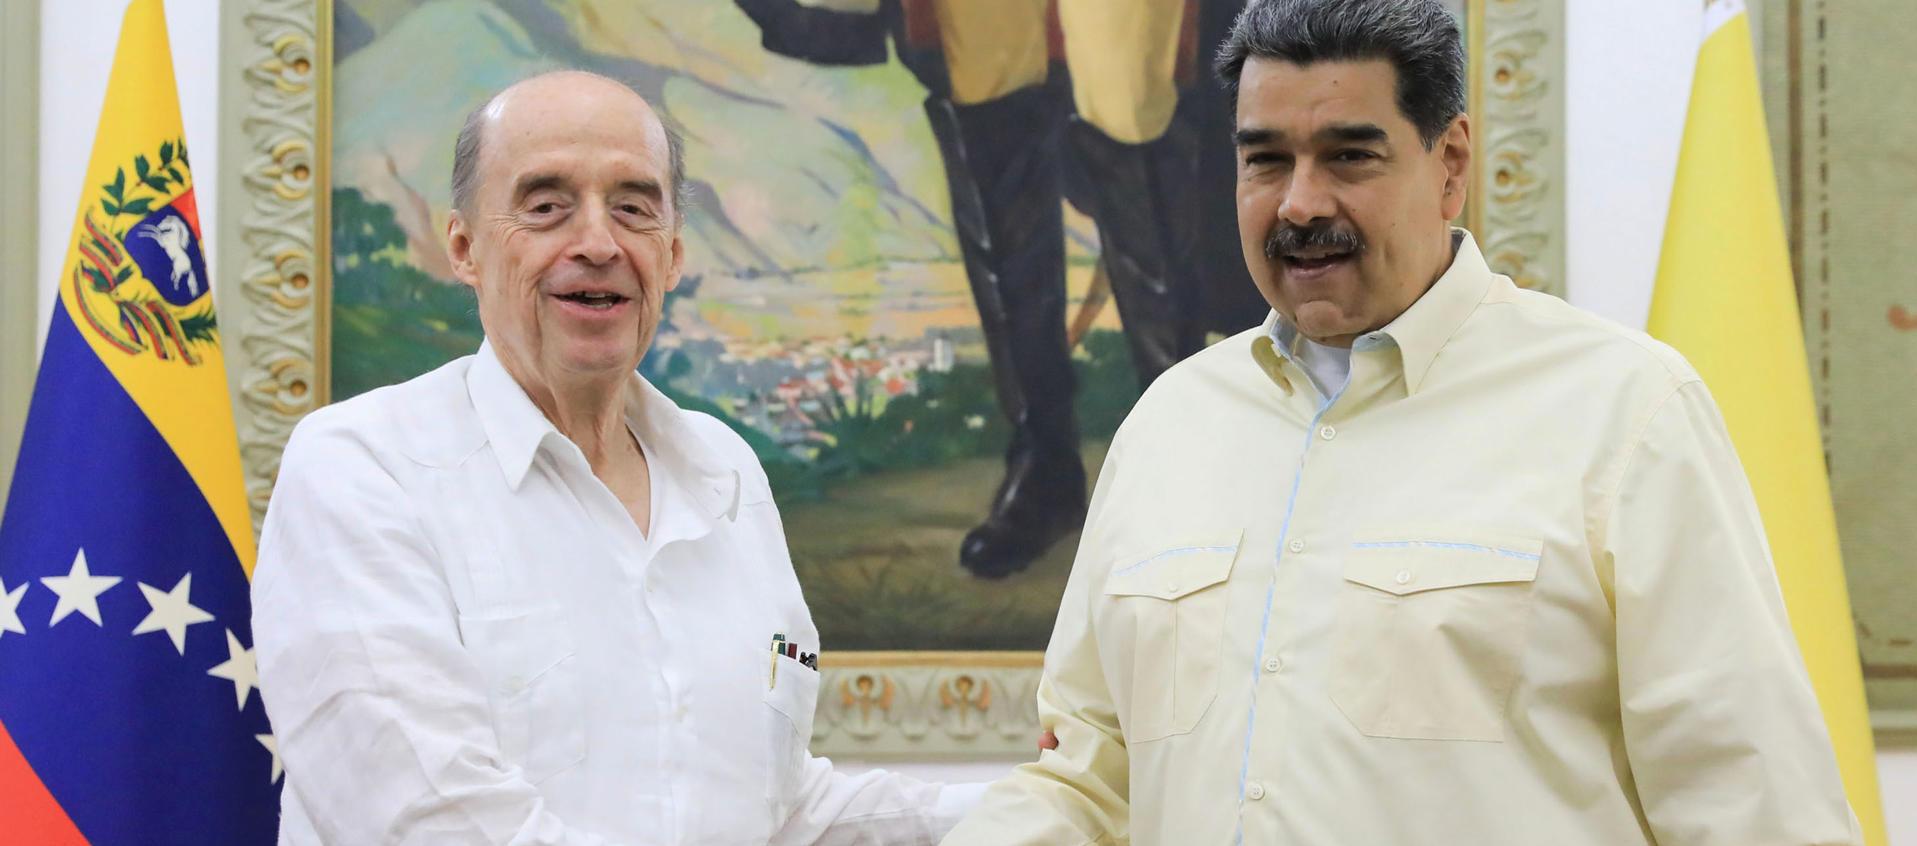 El Presidente Nicolás Maduro estecha la mano al Canciller de Colombia, Álvaro Leyva, en el Palacio de Miraflores.